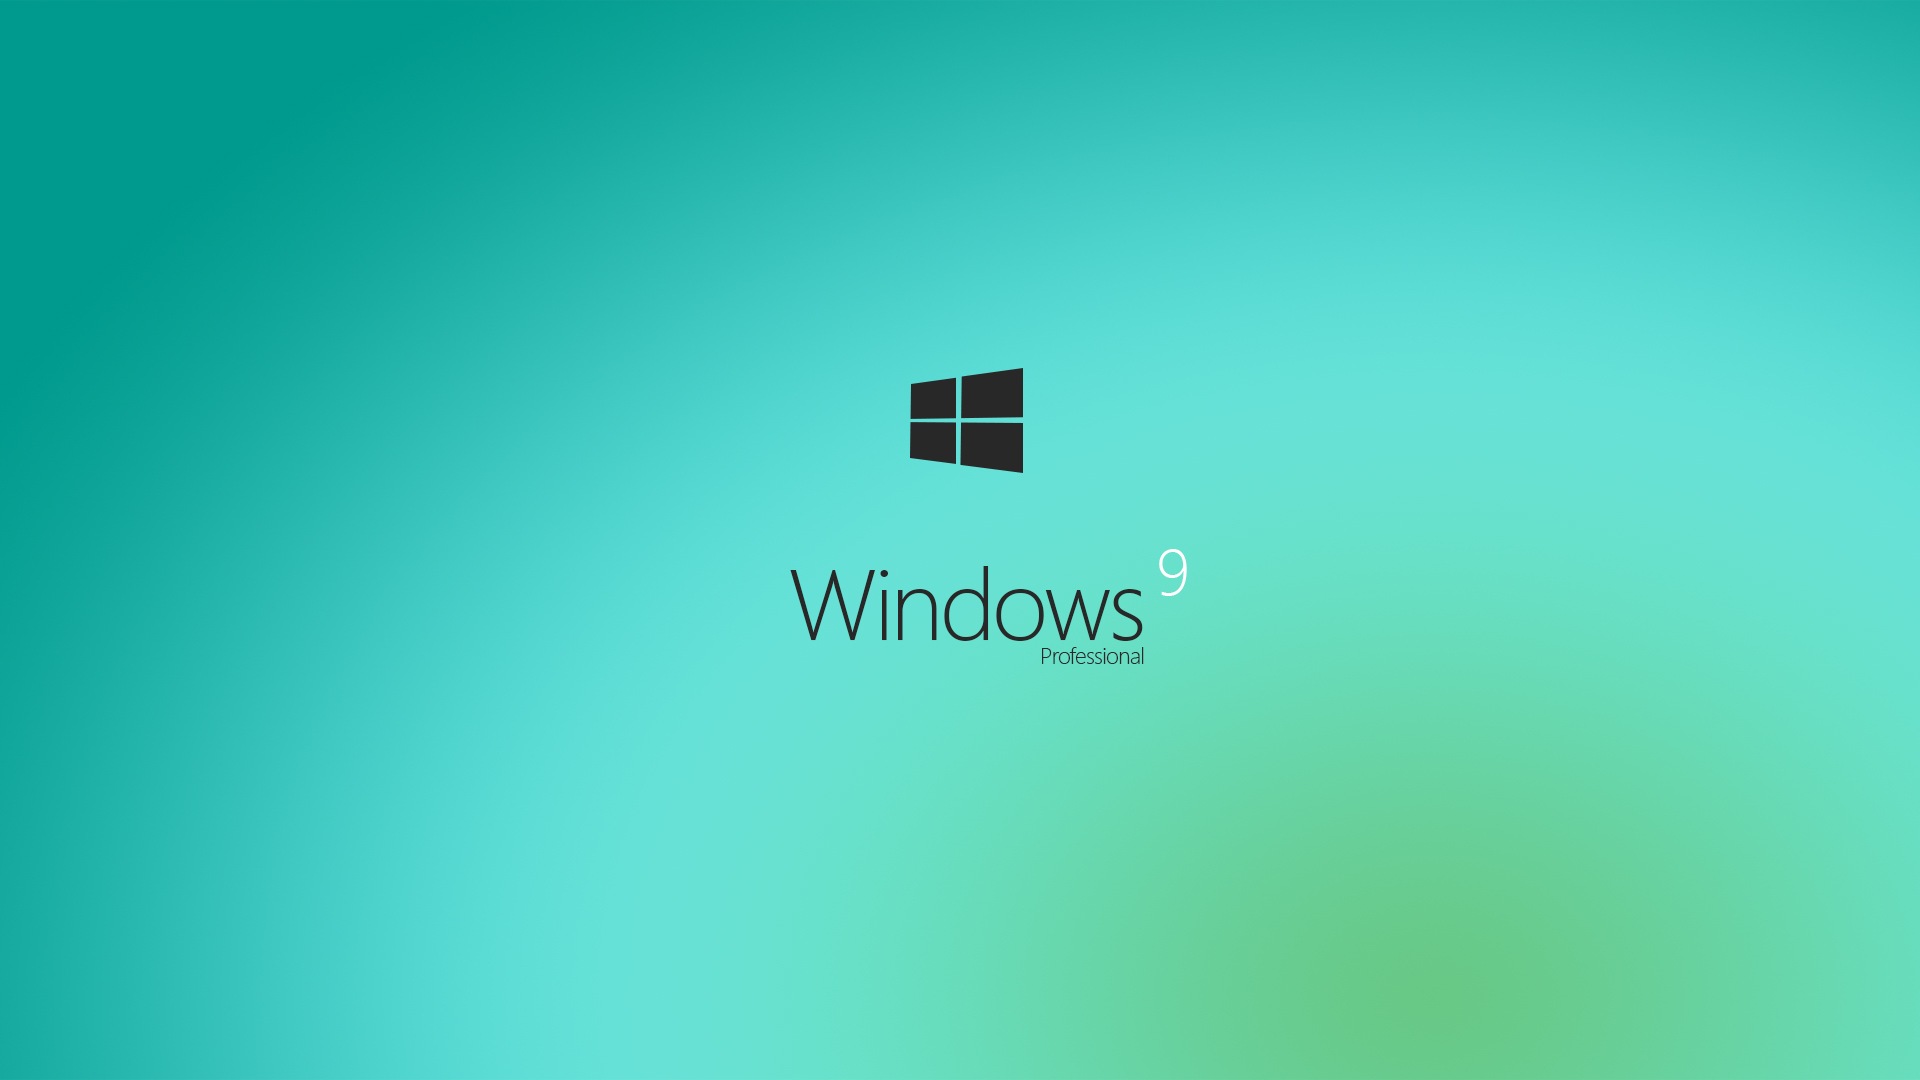 微软 Windows 9 系统主题 高清壁纸3 - 1920x1080